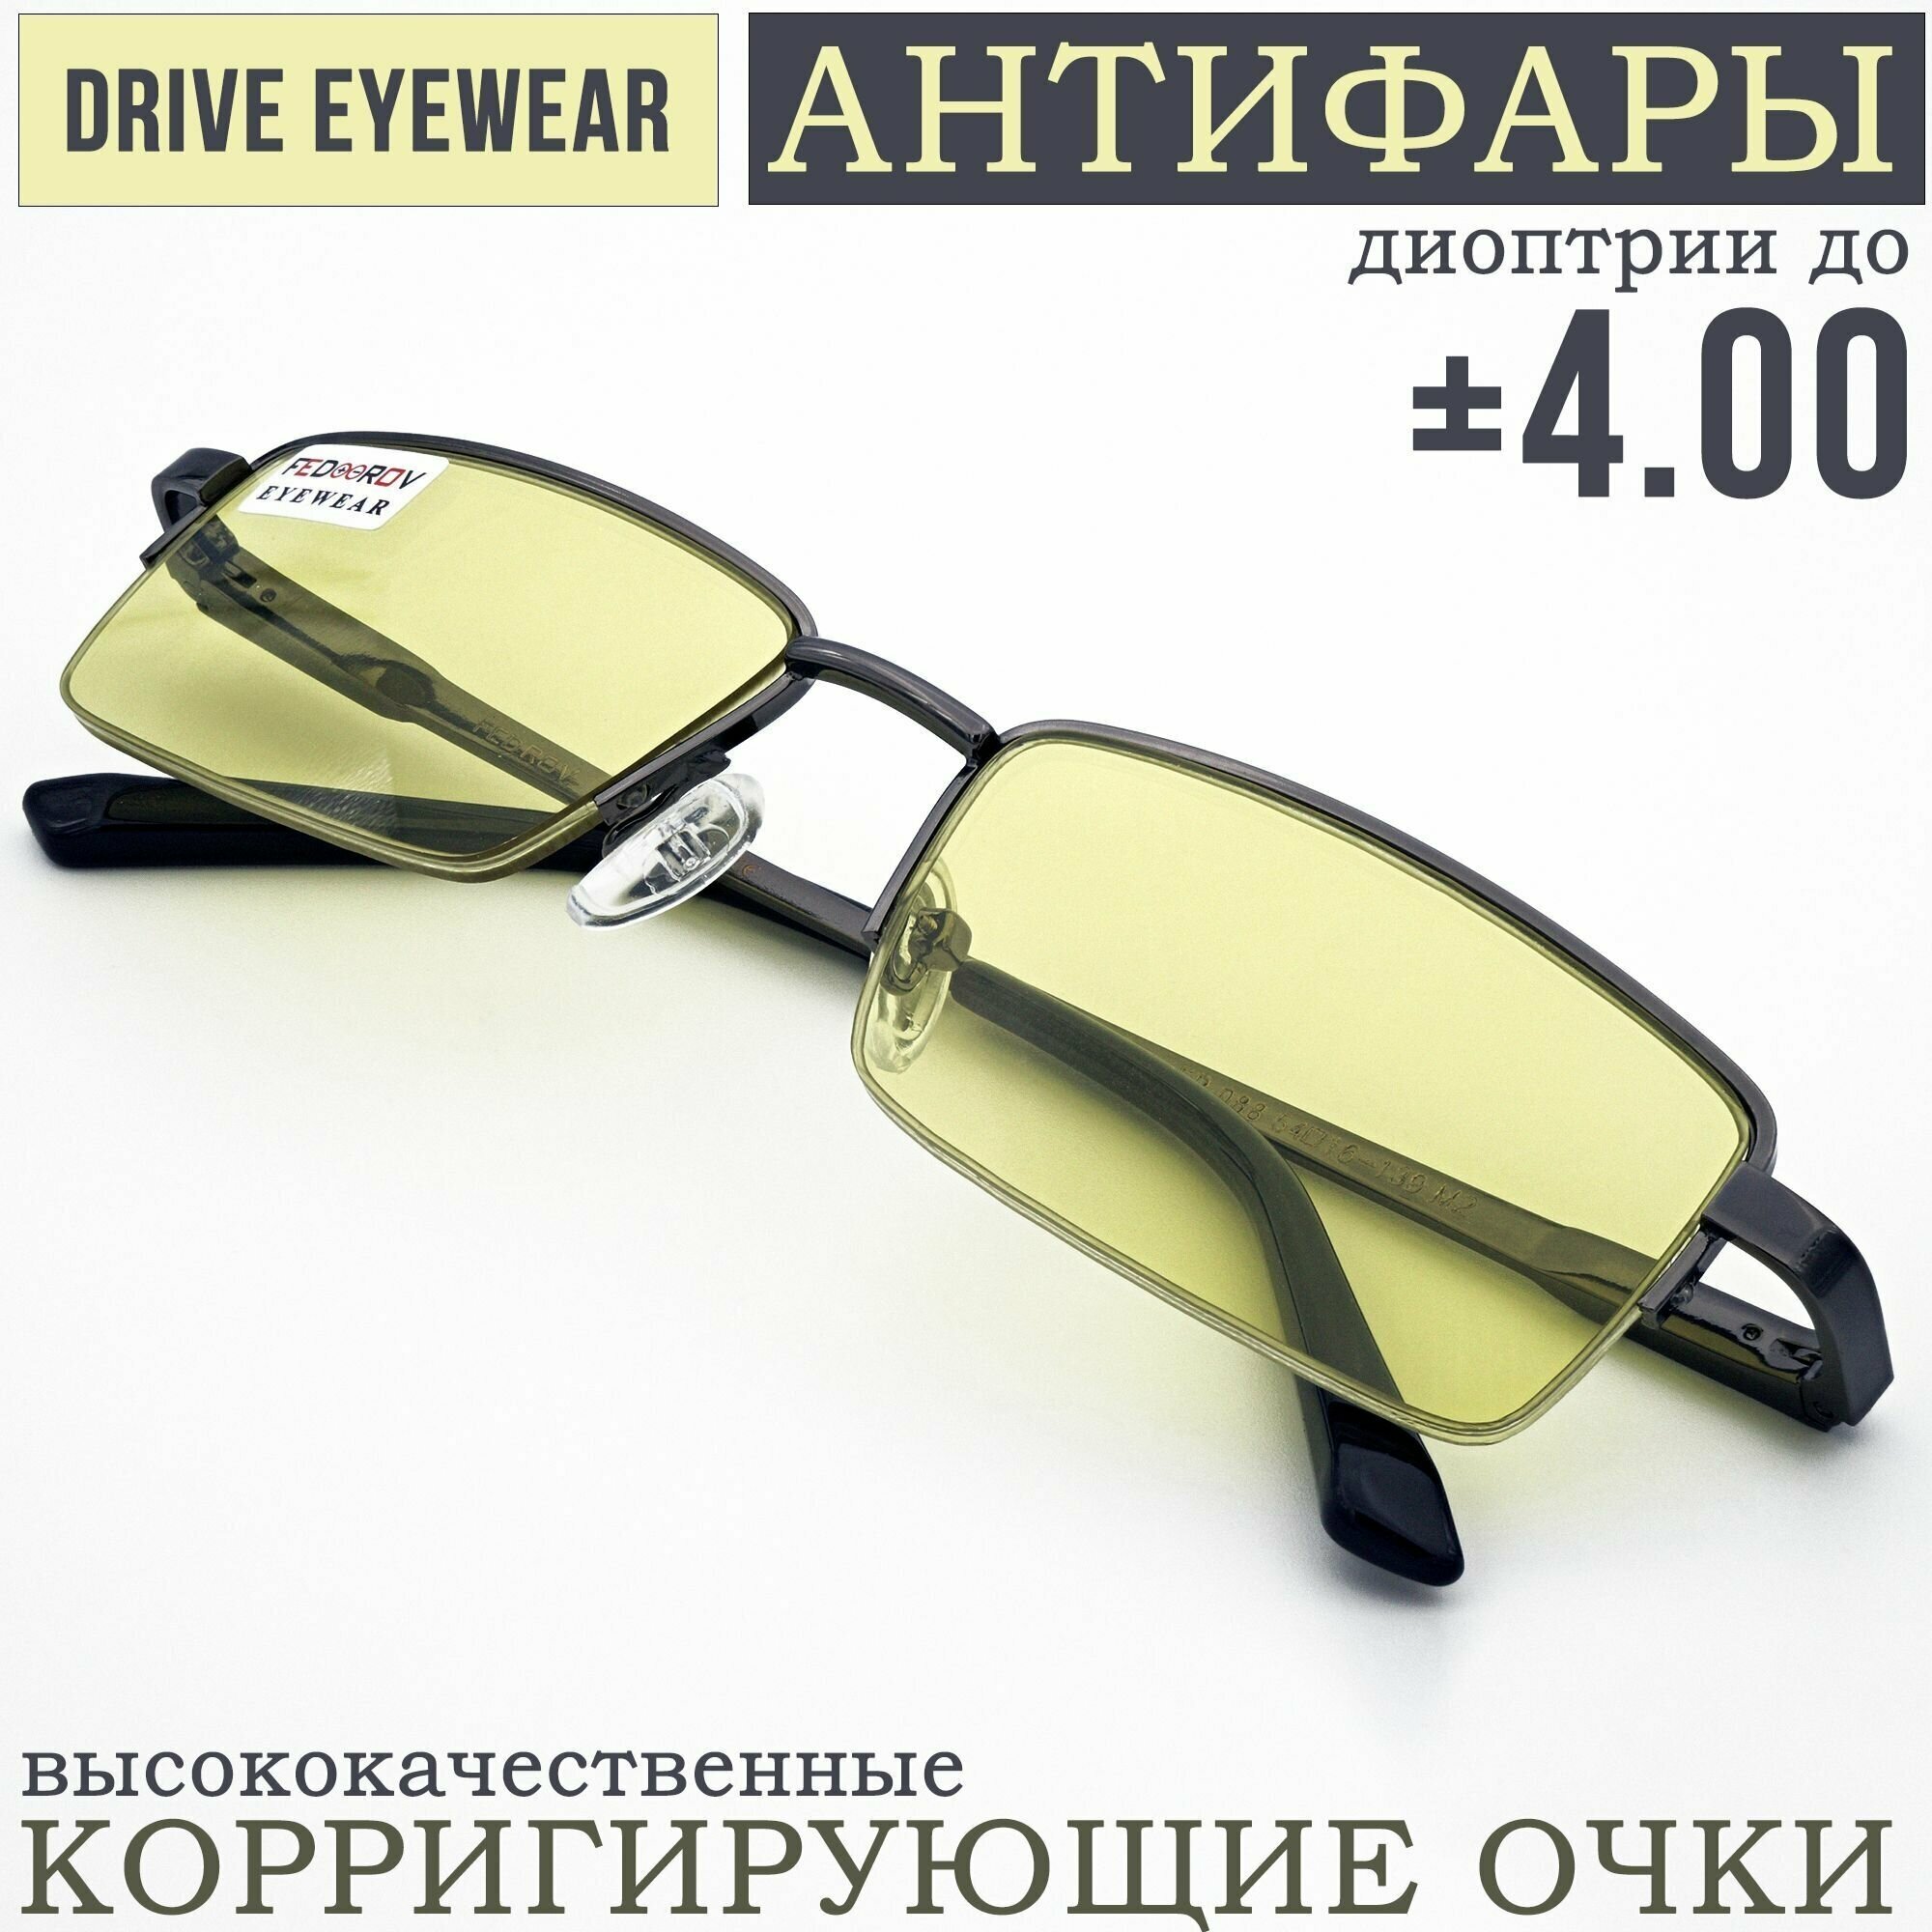 Готовые очки водительские Антифары с диоптриями +2,00